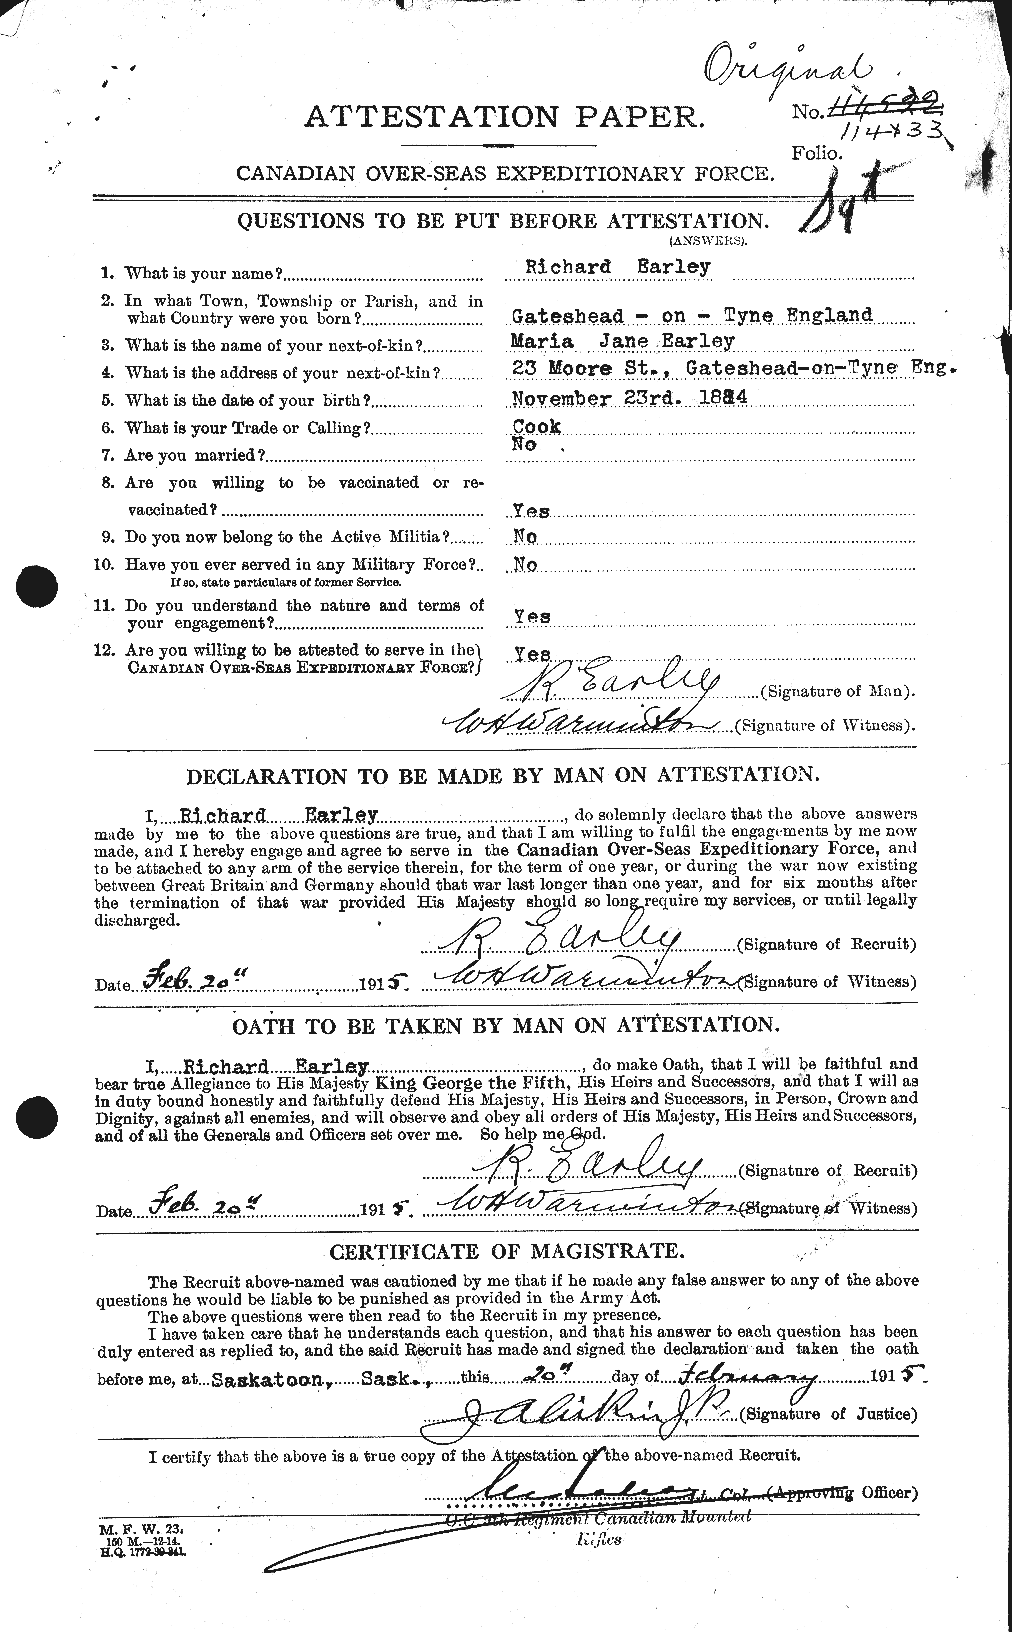 Dossiers du Personnel de la Première Guerre mondiale - CEC 307126a